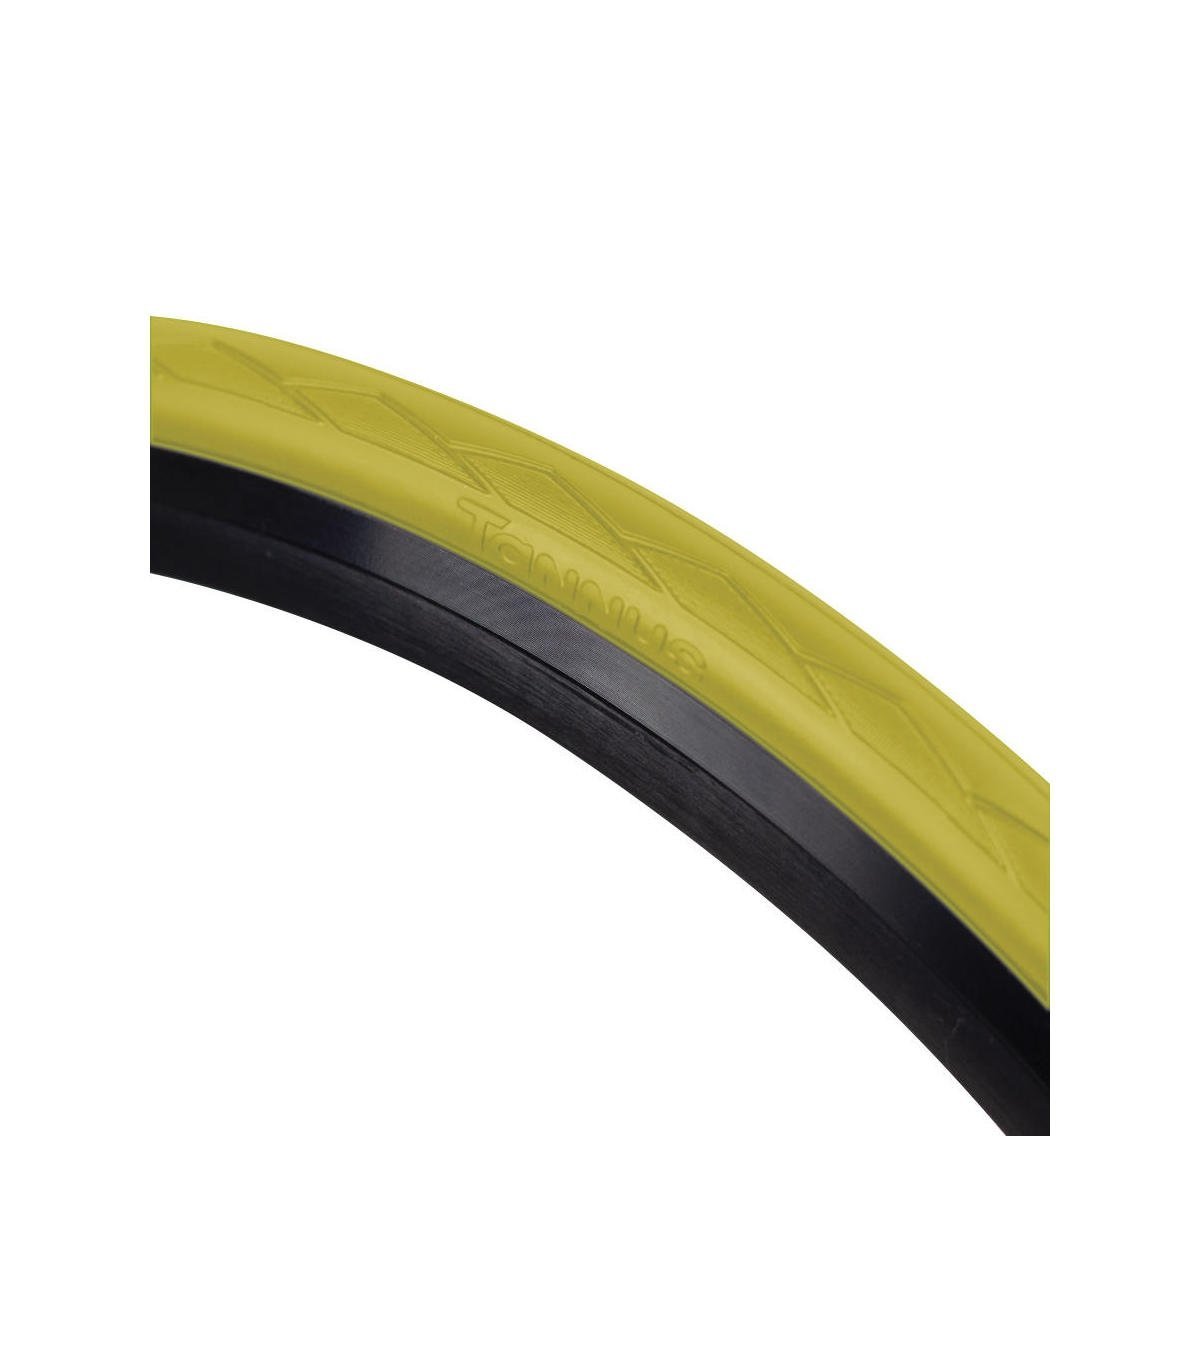 Cubierta Semi Slick 700 * 28c (28-622) Regular Tannus Airless Tire - amarillo - 